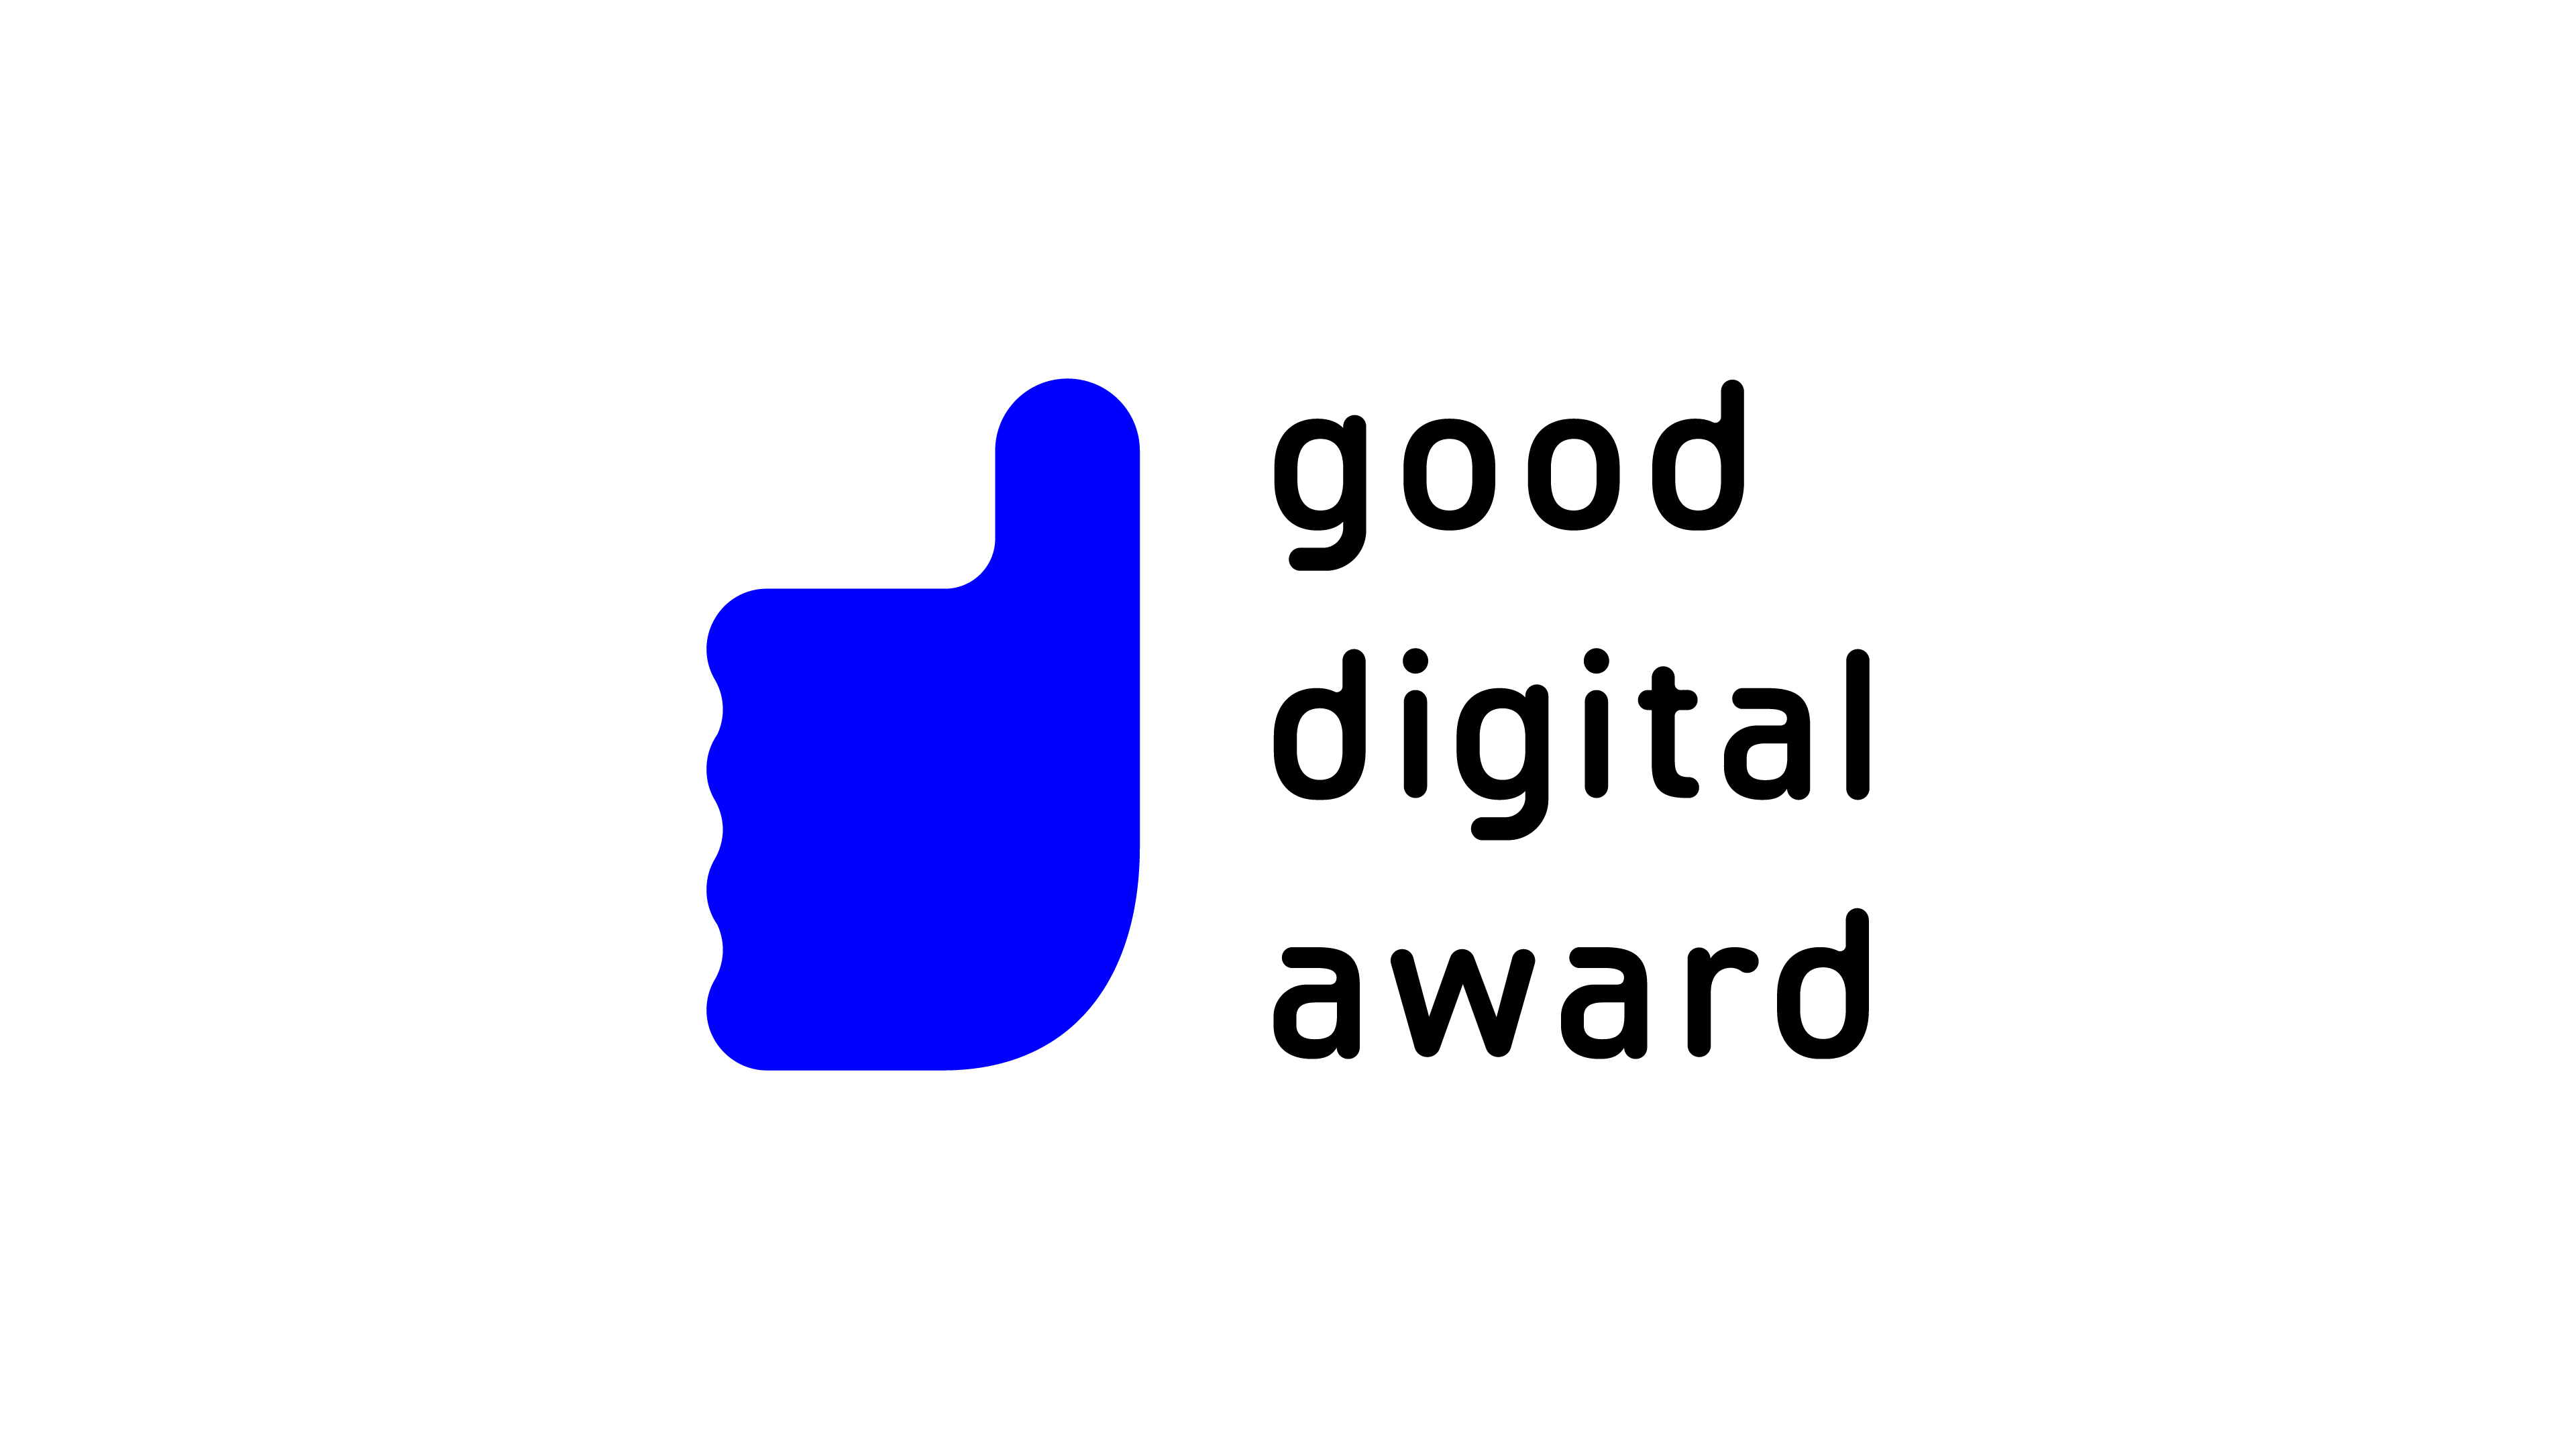 good digital awardのロゴマーク。右側にテキスト、左側に親指を抽象化したマークがある。テキストはgood digital awardが単語ごとに改行されて3行になった状態で配置されている。マークは親指を立てた右手をシンプルに抽象化したシルエットが鮮やかな紺色1色で着色されている。